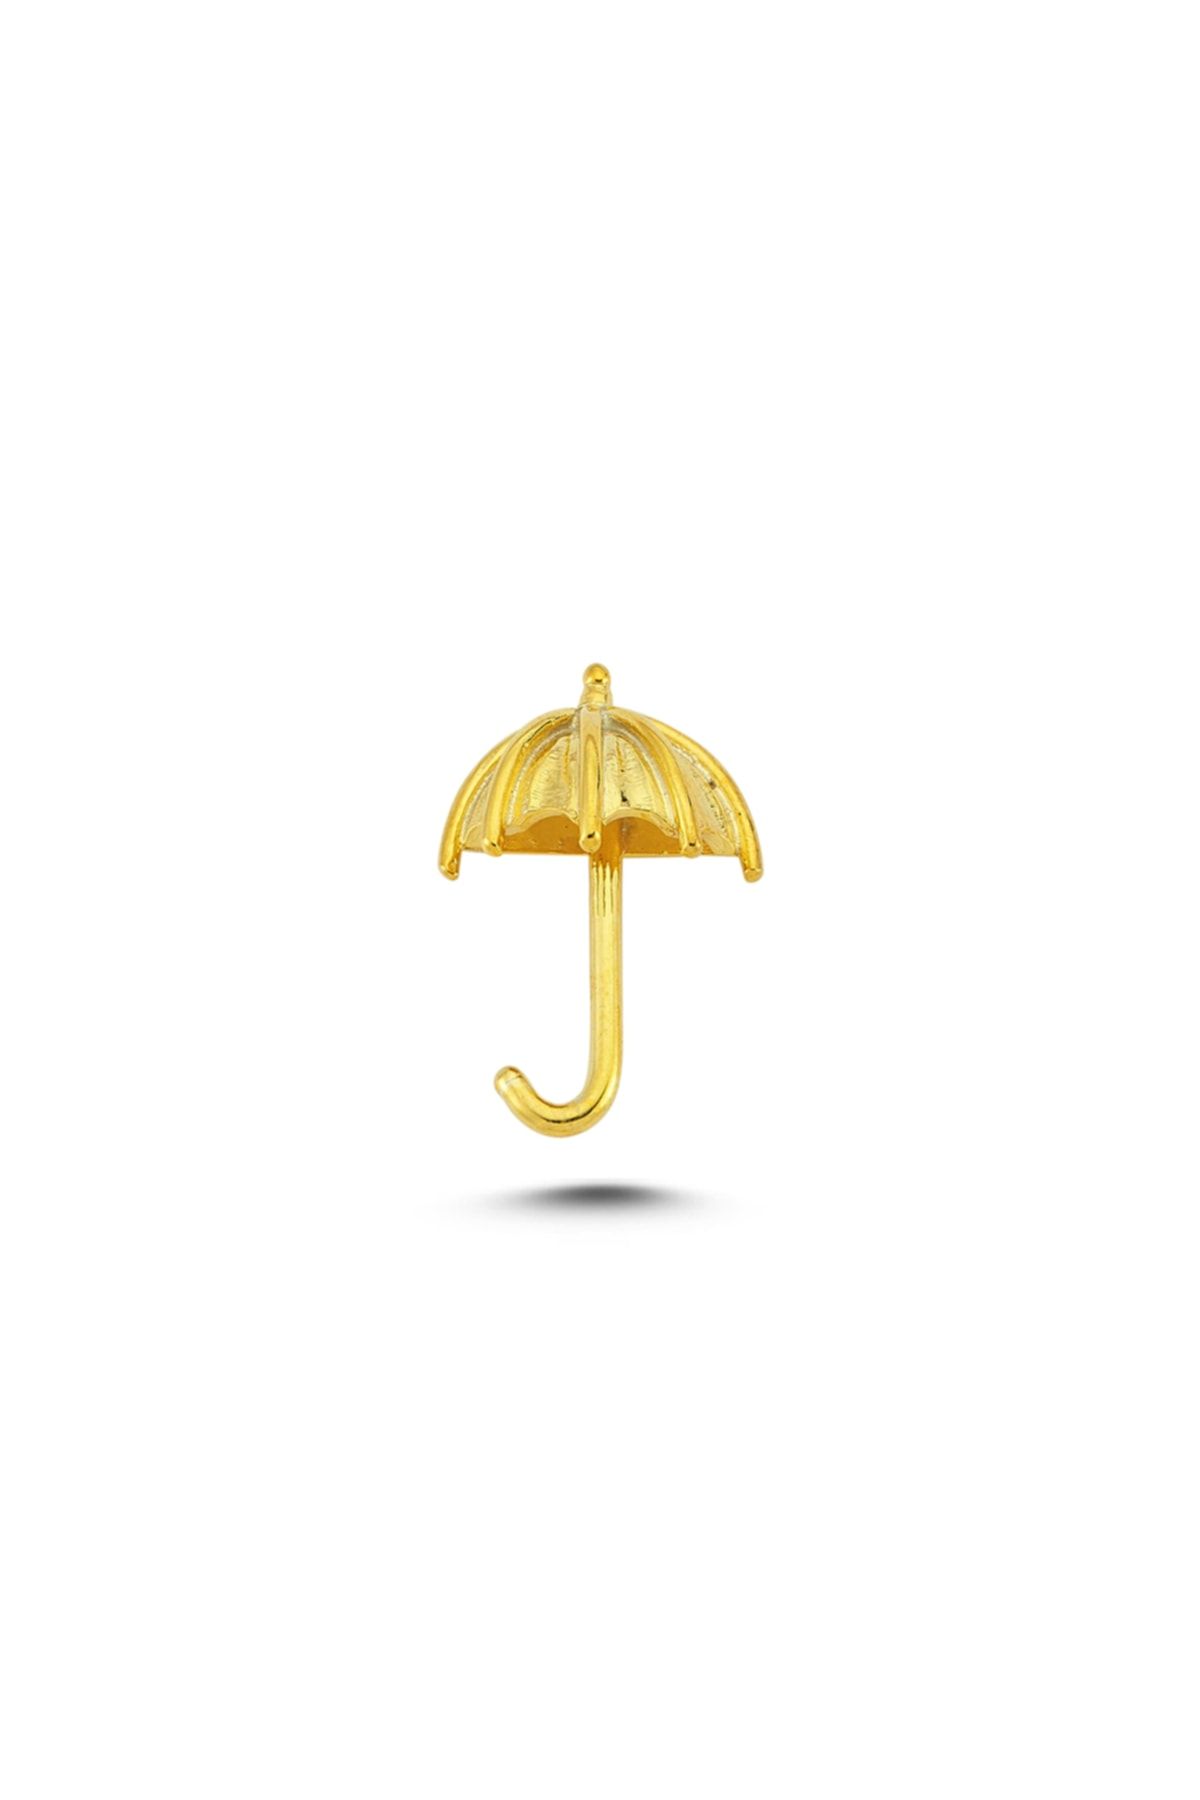 Ecce Mini Pin Şemsiye Gümüş Üzeri 14k Altın Kaplamalı Broş/rozet